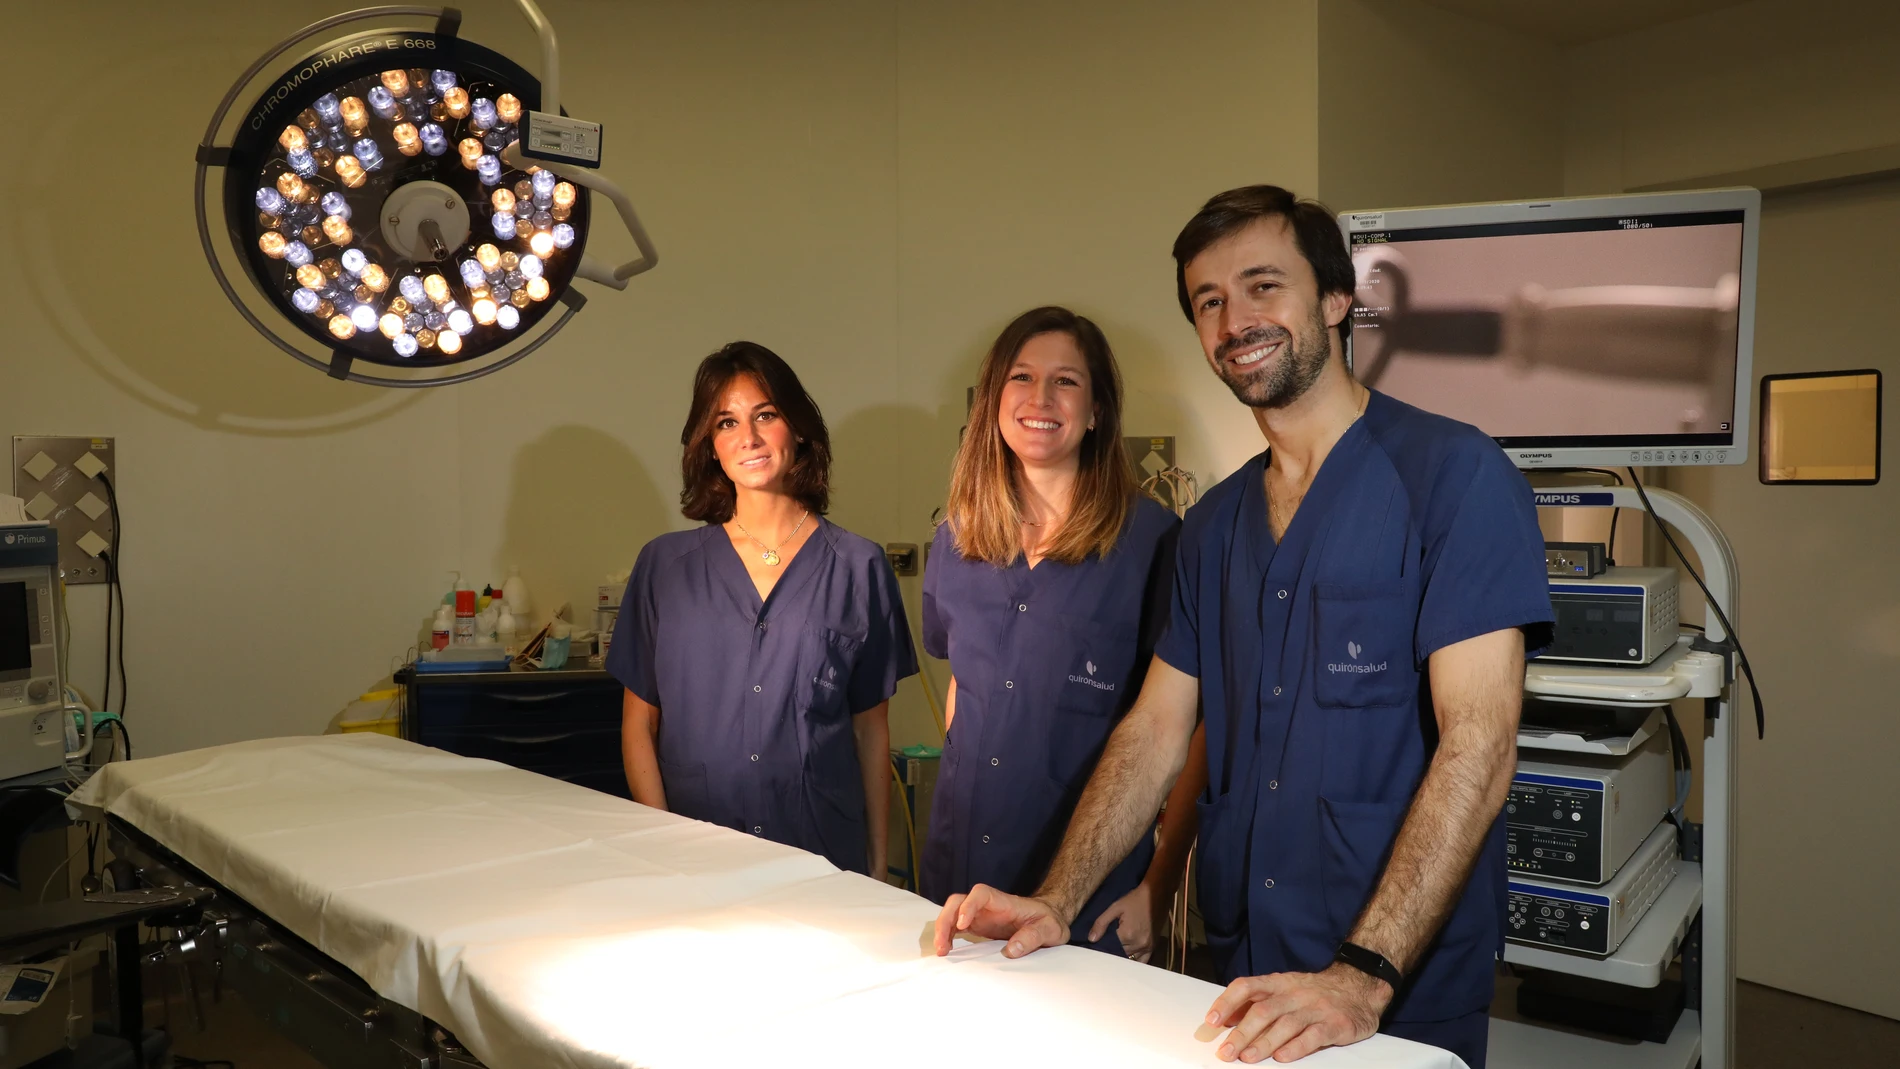 De dcha. a izqda. Jaime Siegrist, María Lombarte y Patricia Alonso, ginecólogos especializados en naprotecnología, en el quirófano Hospital Quirónsalud San José de Madrid